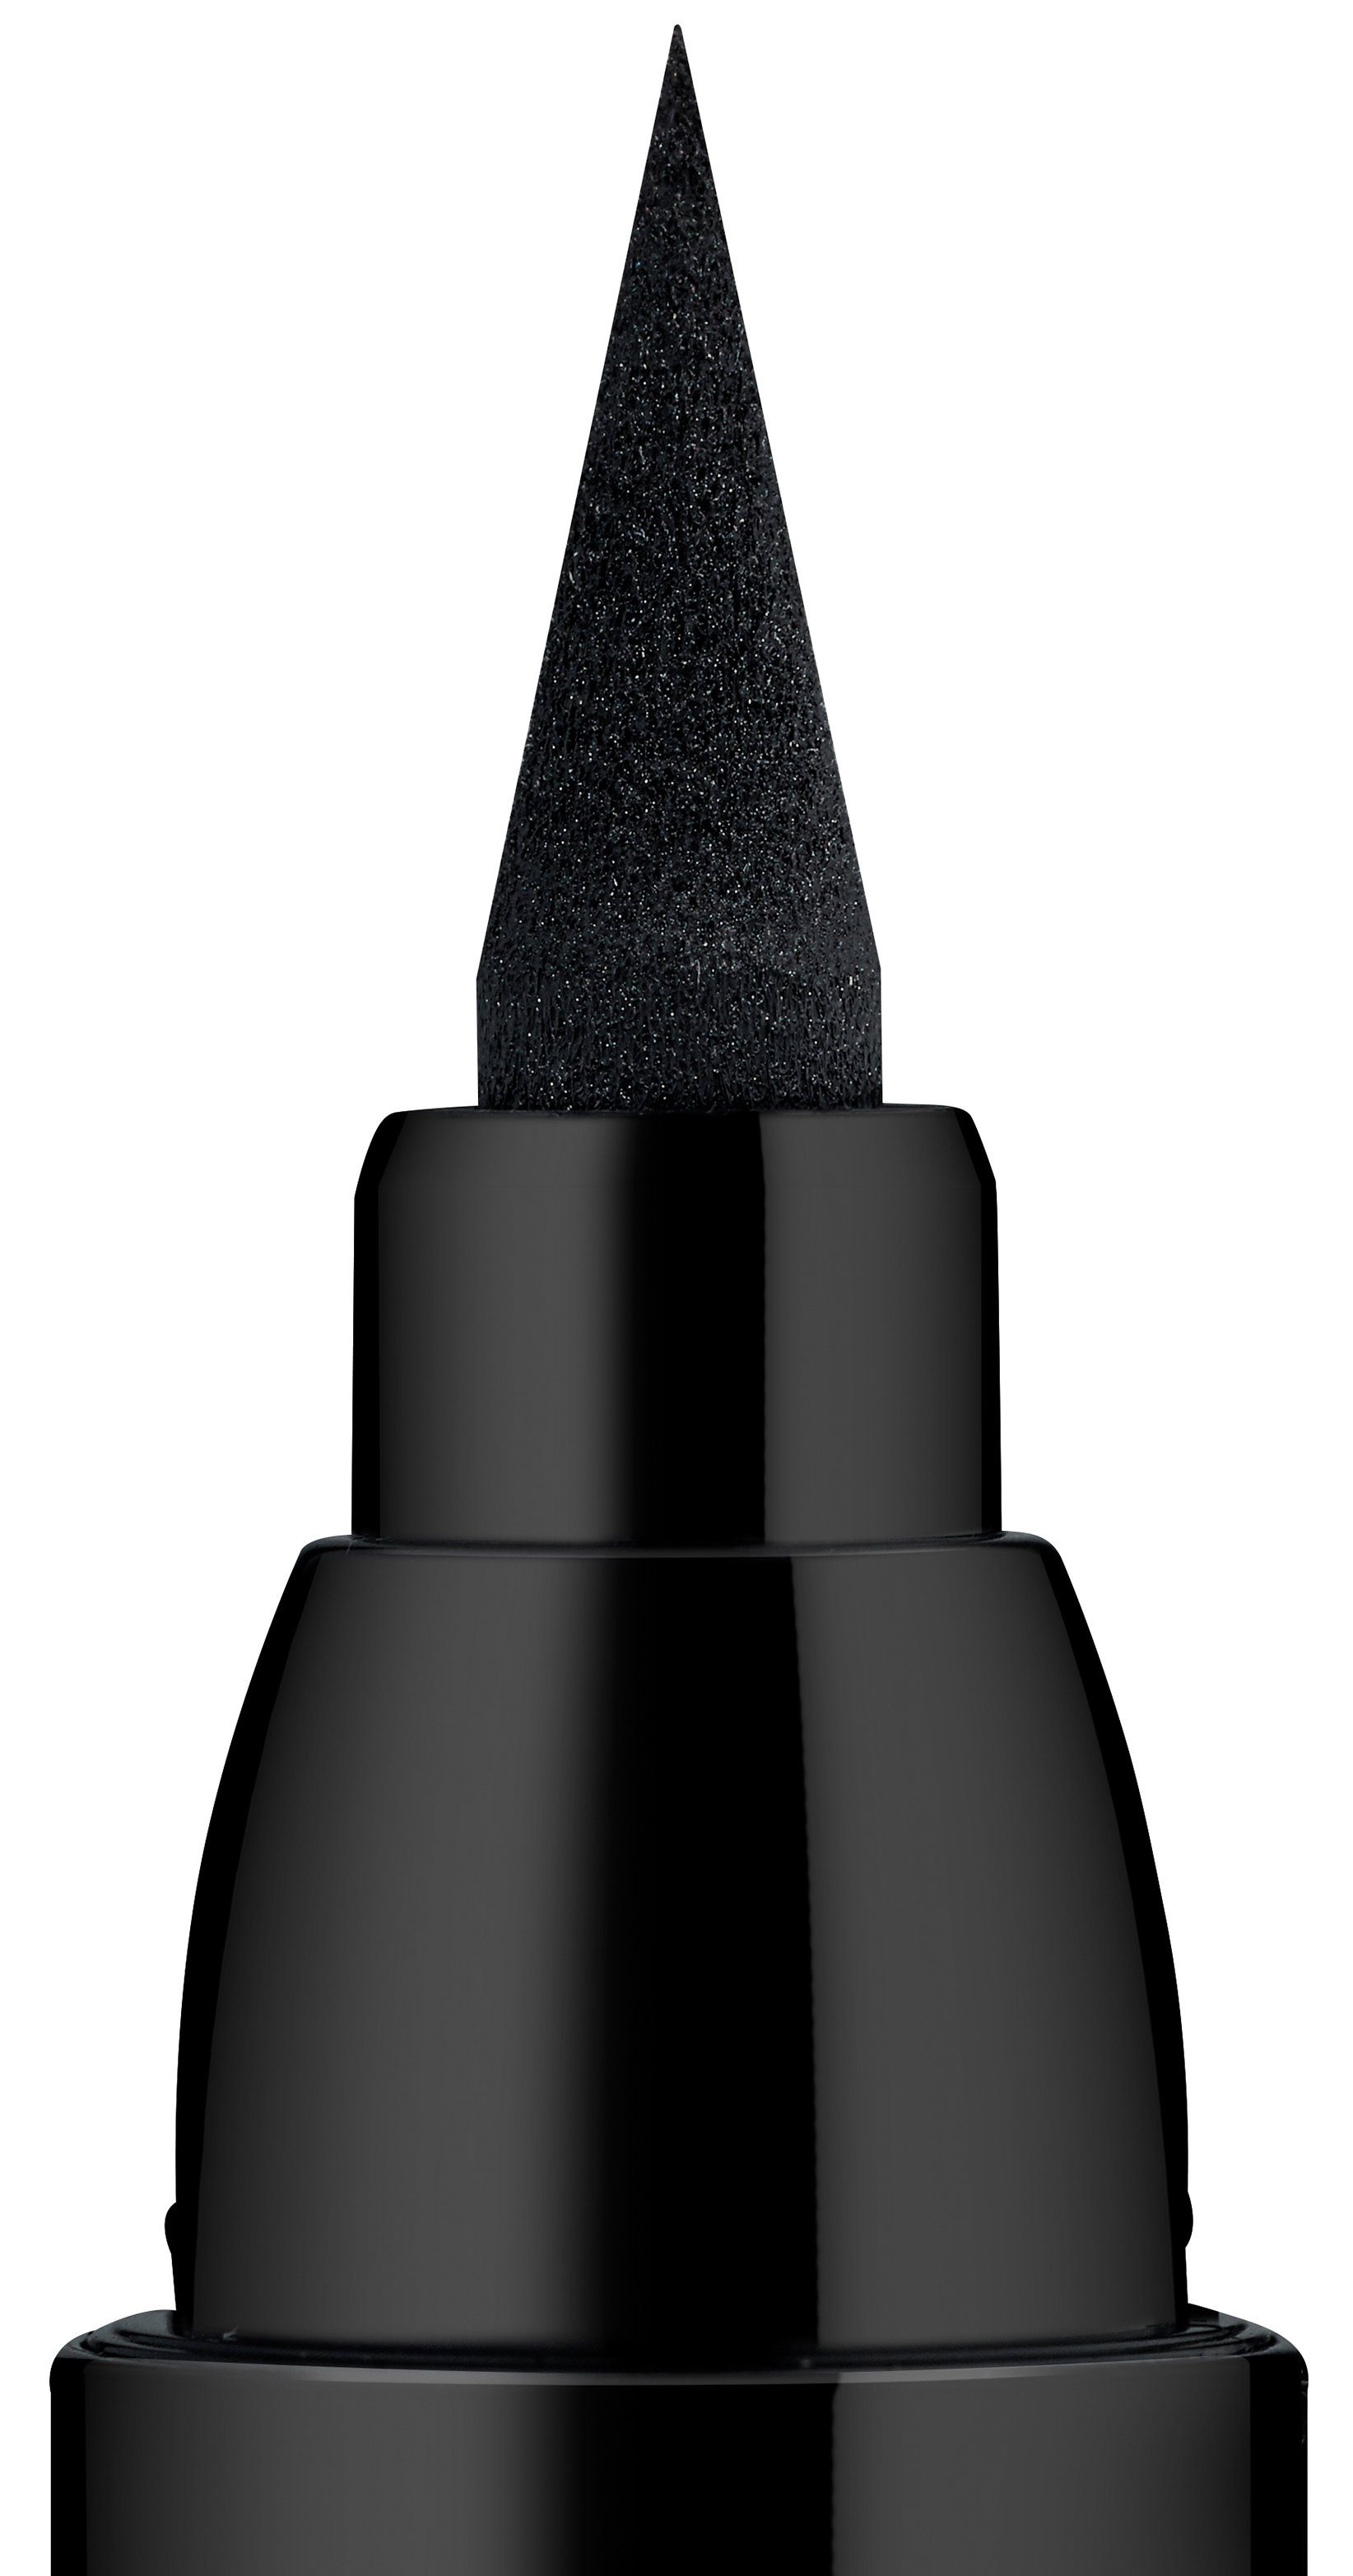 Essence waterproof, 5-tlg. Eyeliner LINER black Lash PRINCESS